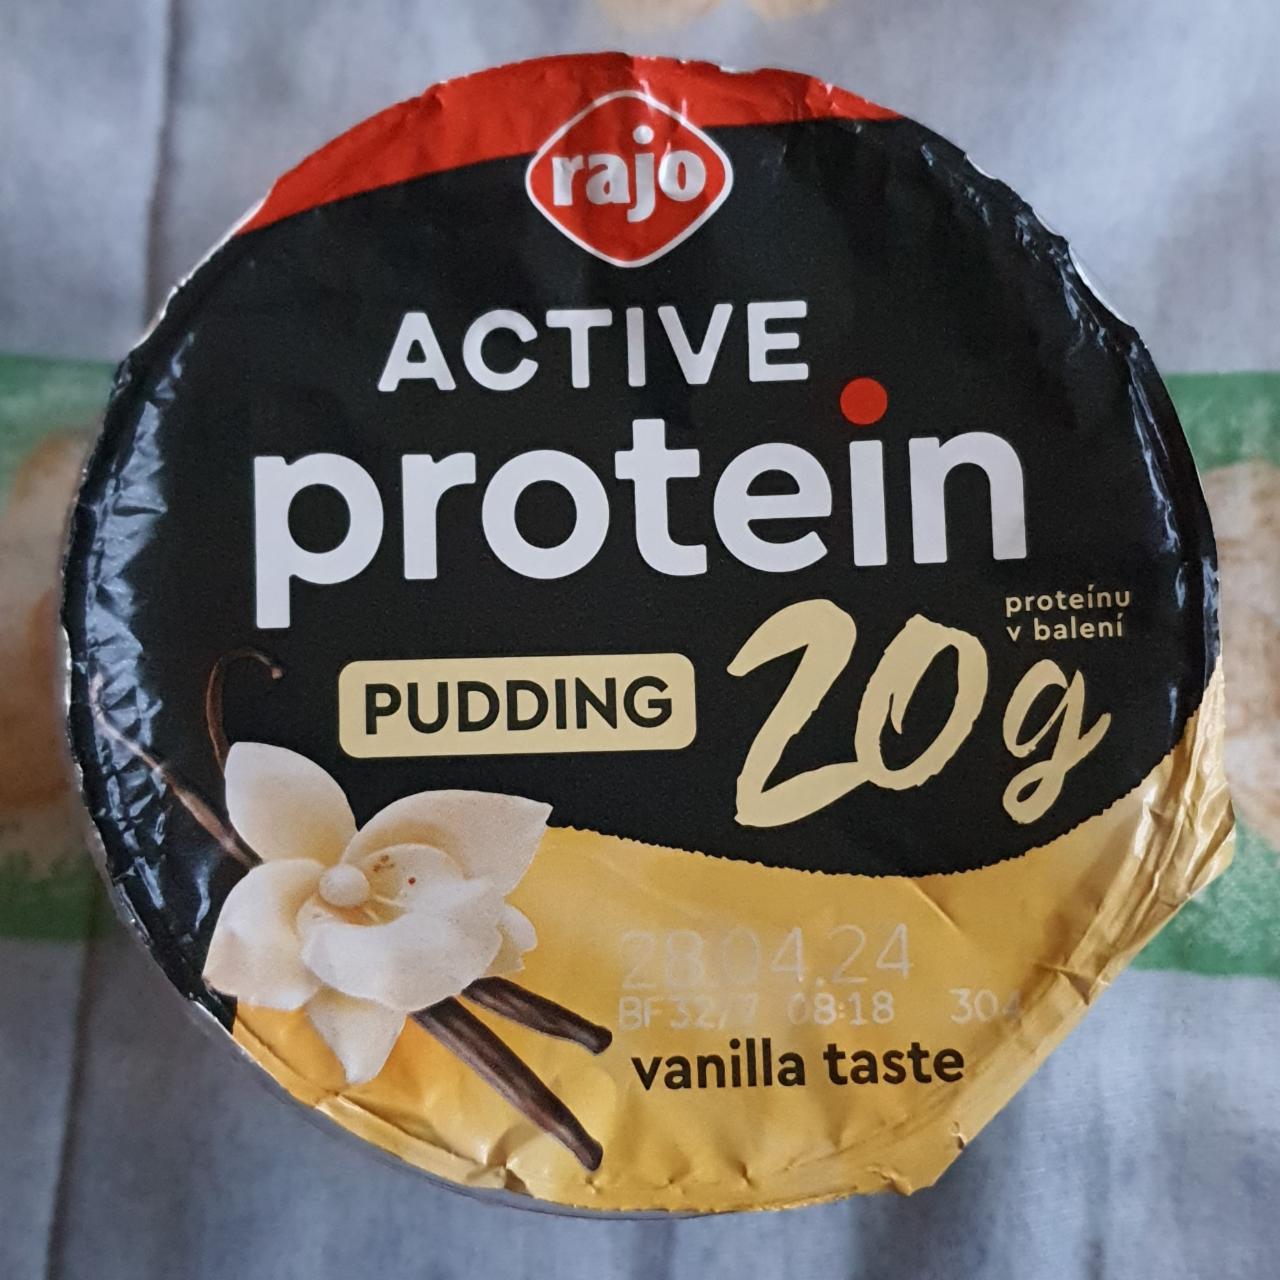 Képek - Active protein pudding vanilla taste Rajo